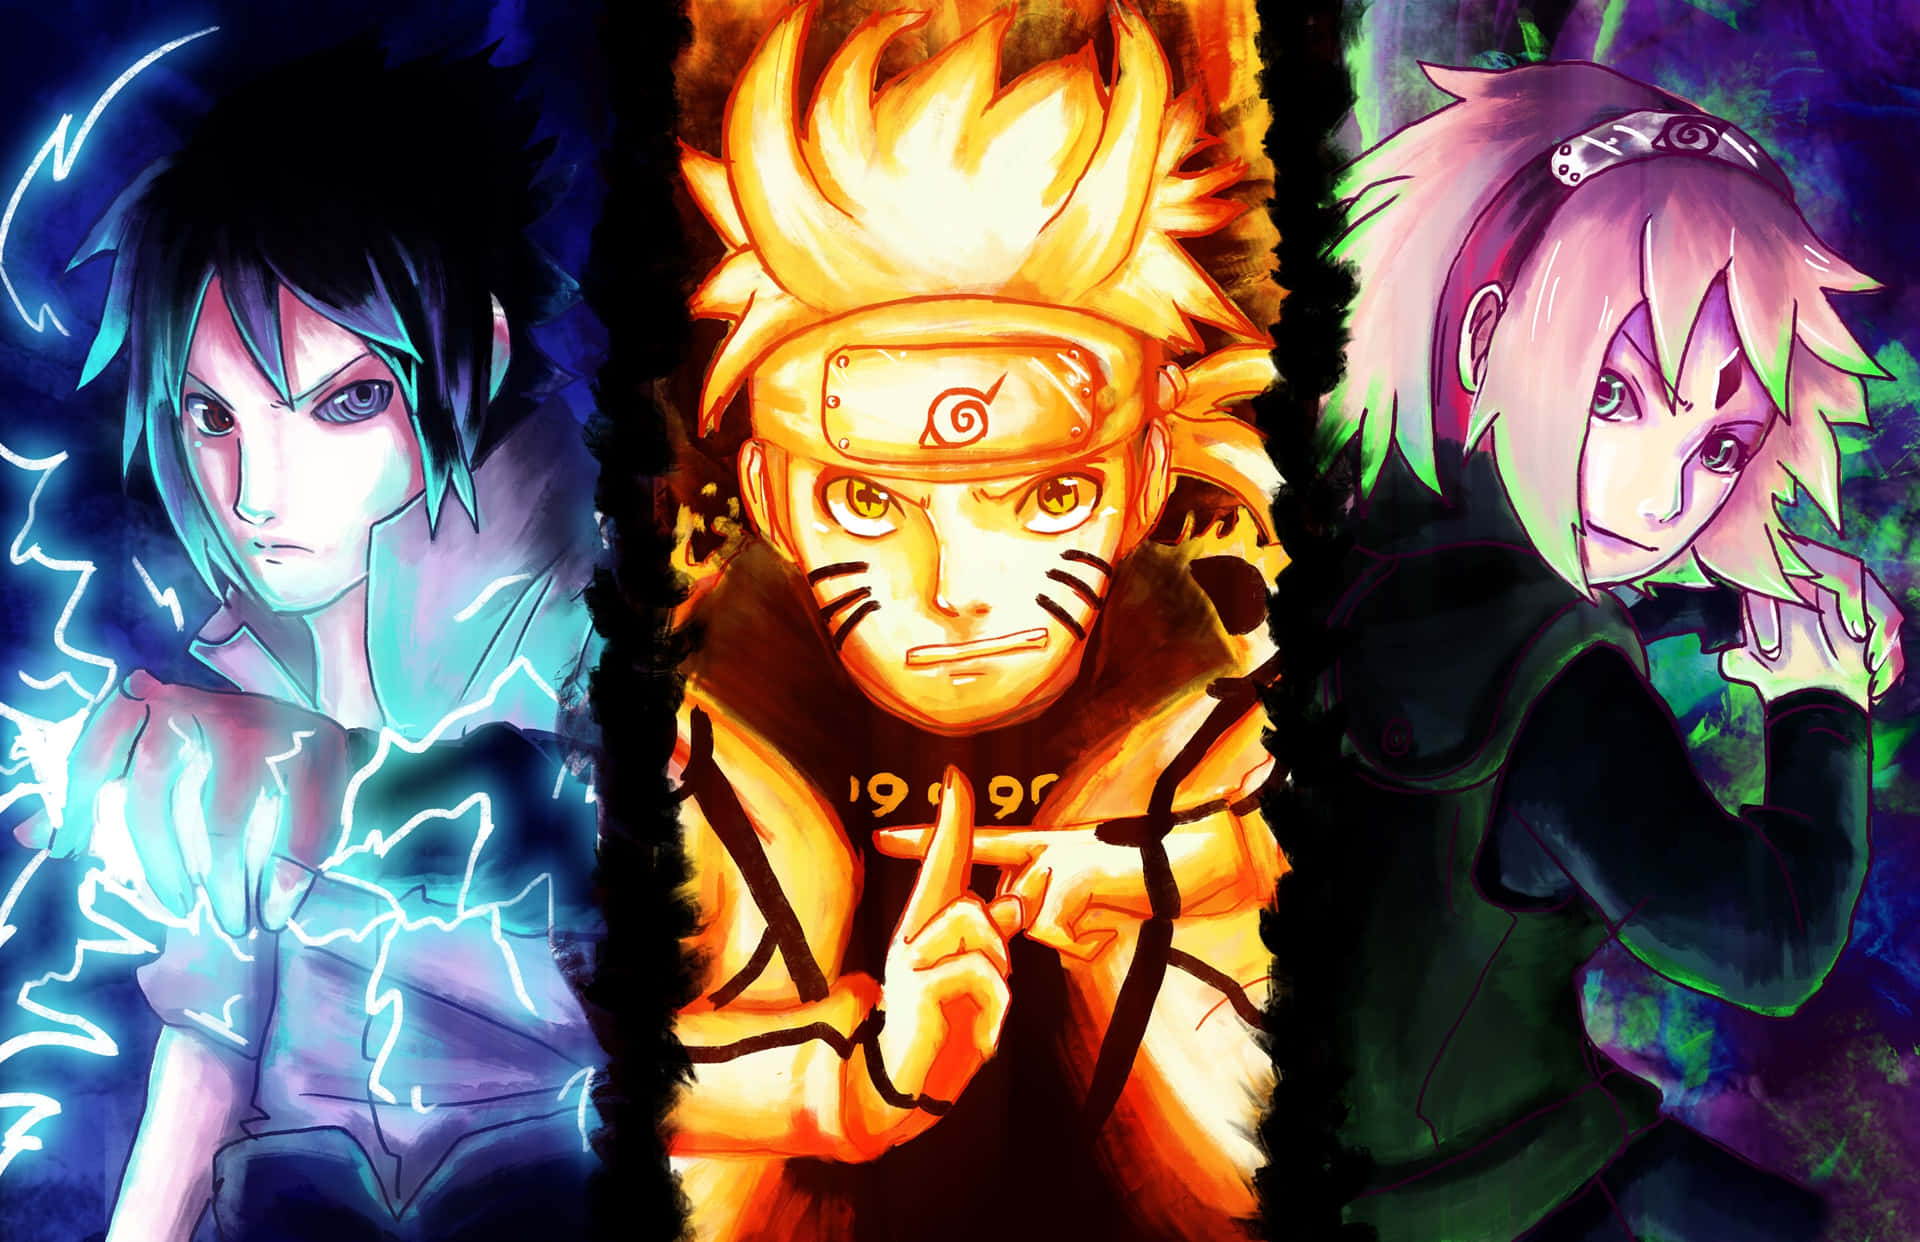 Team 7 Naruto Wallpaper: Nếu bạn là một fan Naruto đích thực, thì hình nền Team 7 chắc chắn sẽ làm bạn cảm thấy thích thú. Hãy xem những hình nền tuyệt đẹp của các nhân vật Naruto và cảm nhận sự mạnh mẽ và tinh thần đồng đội của Team